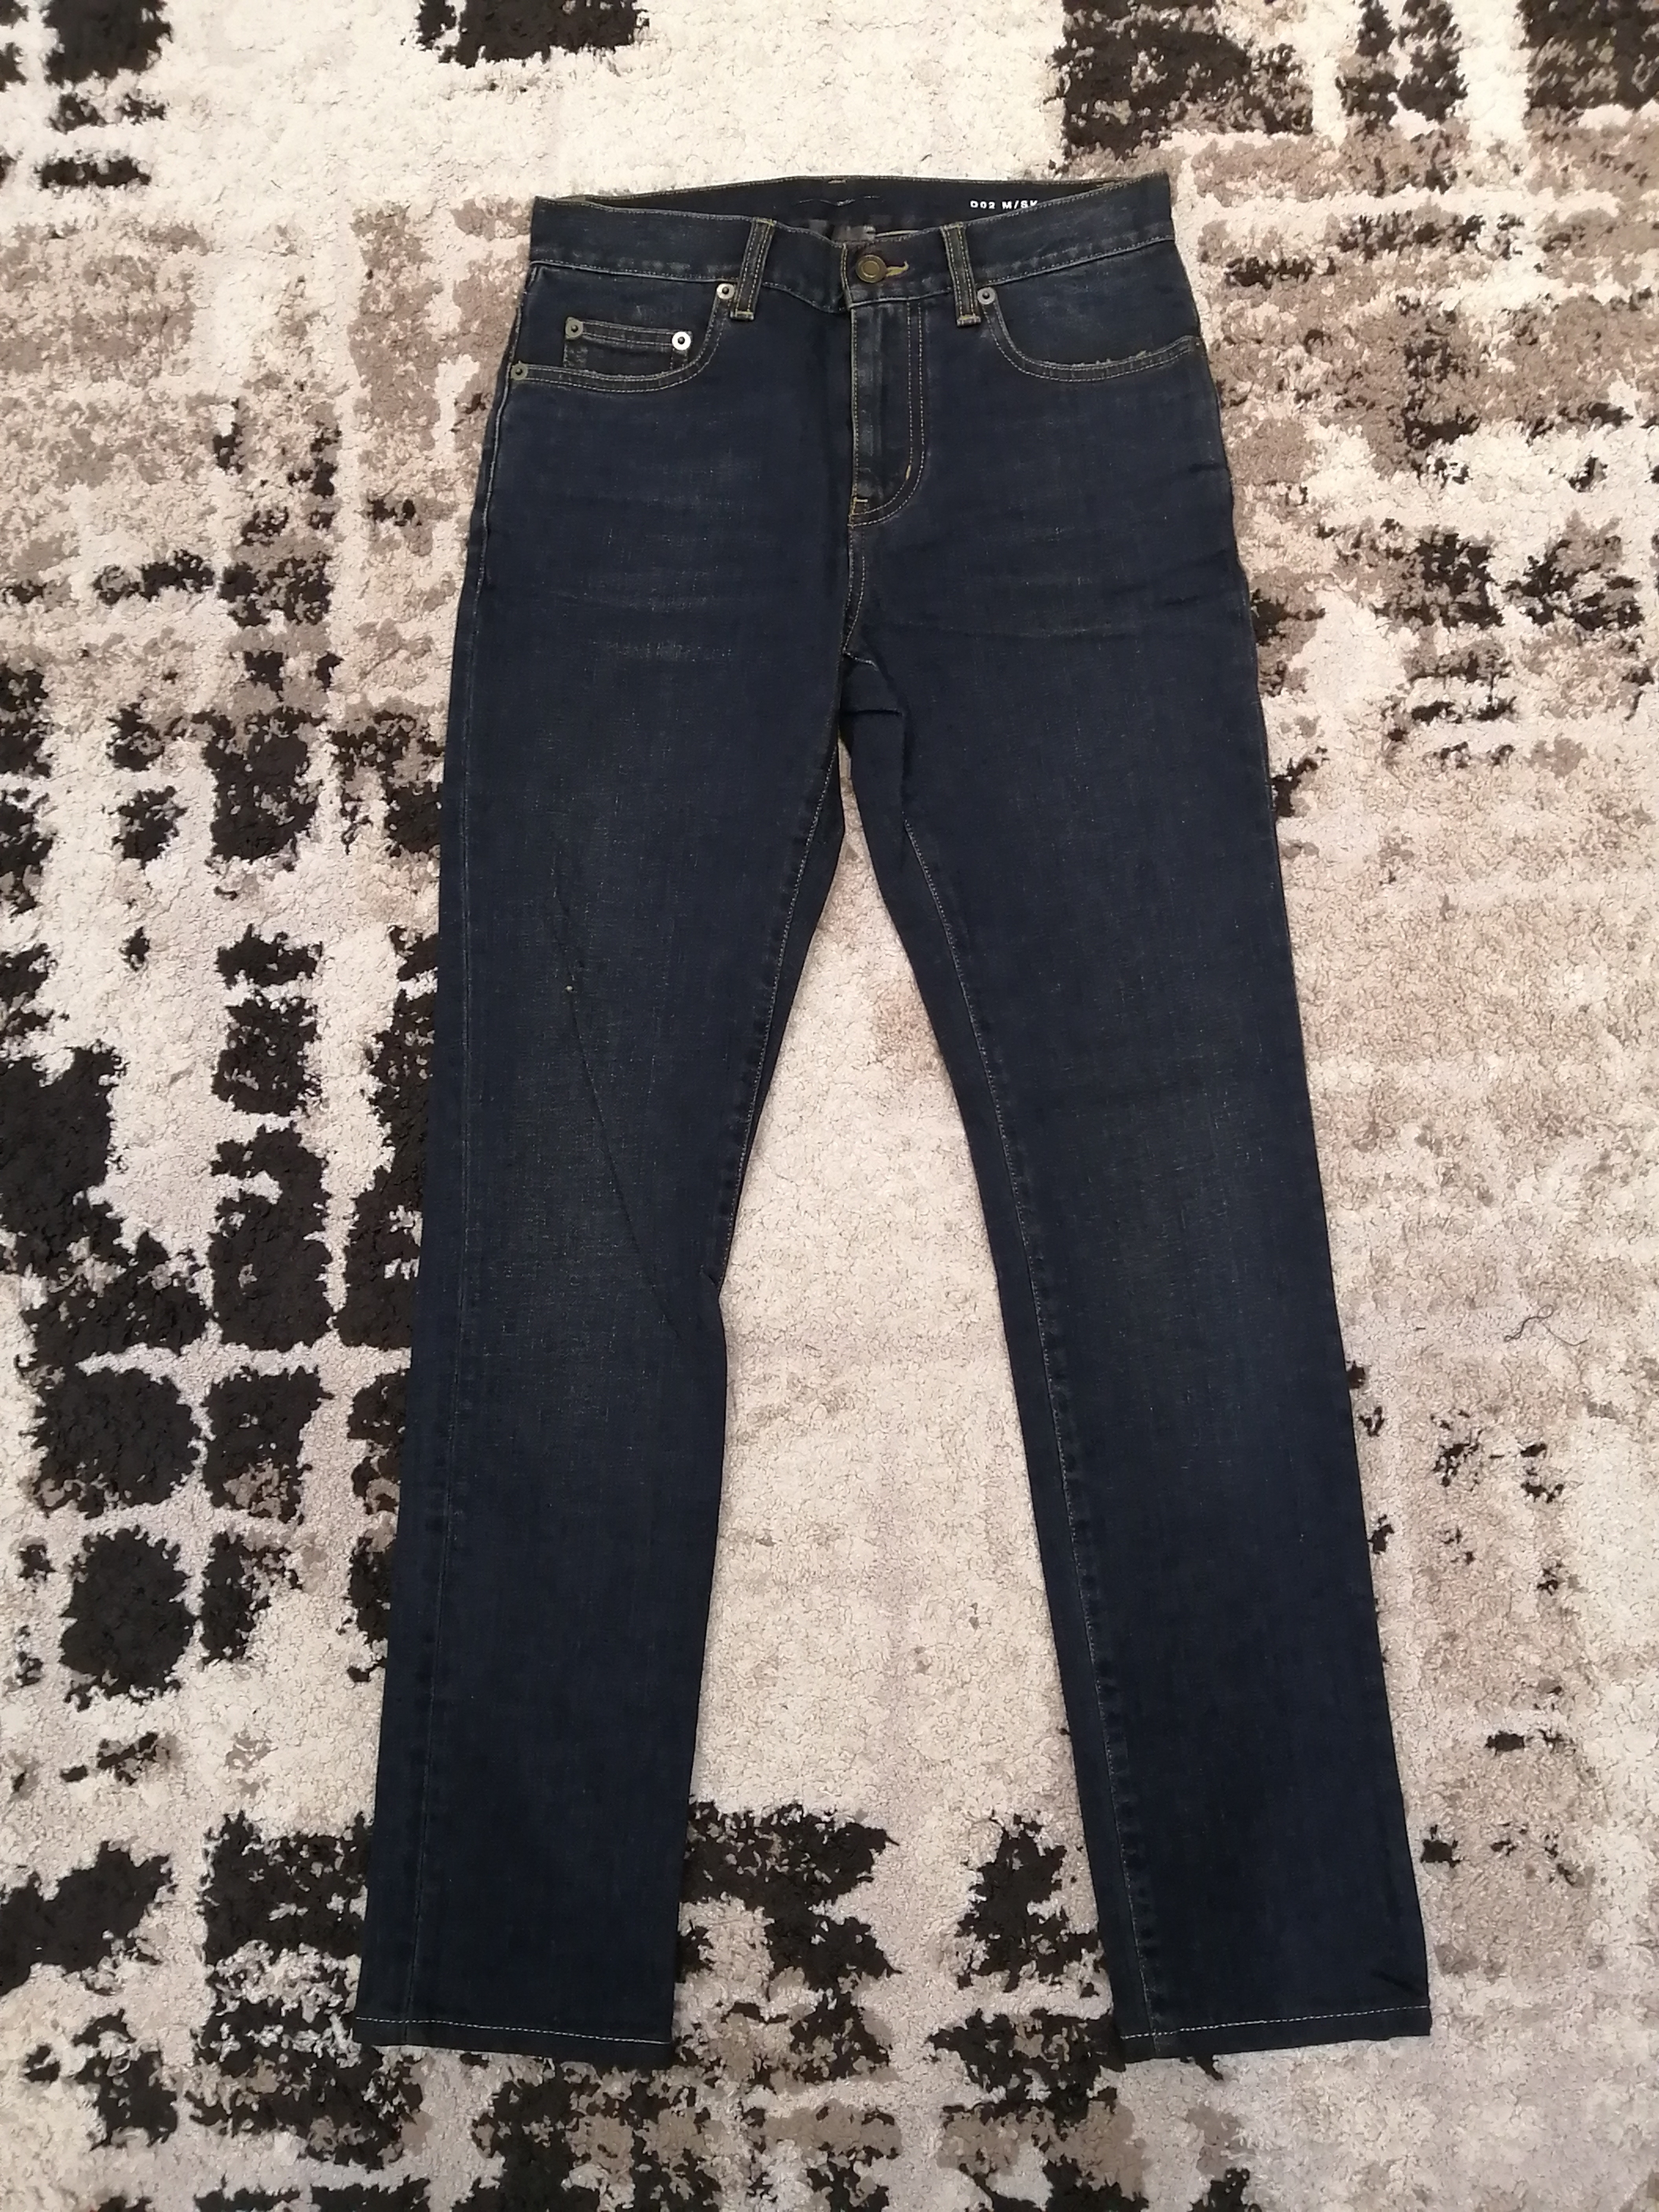 Saint Laurent Paris D02 M/SK - LW Skinny Jeans - 14